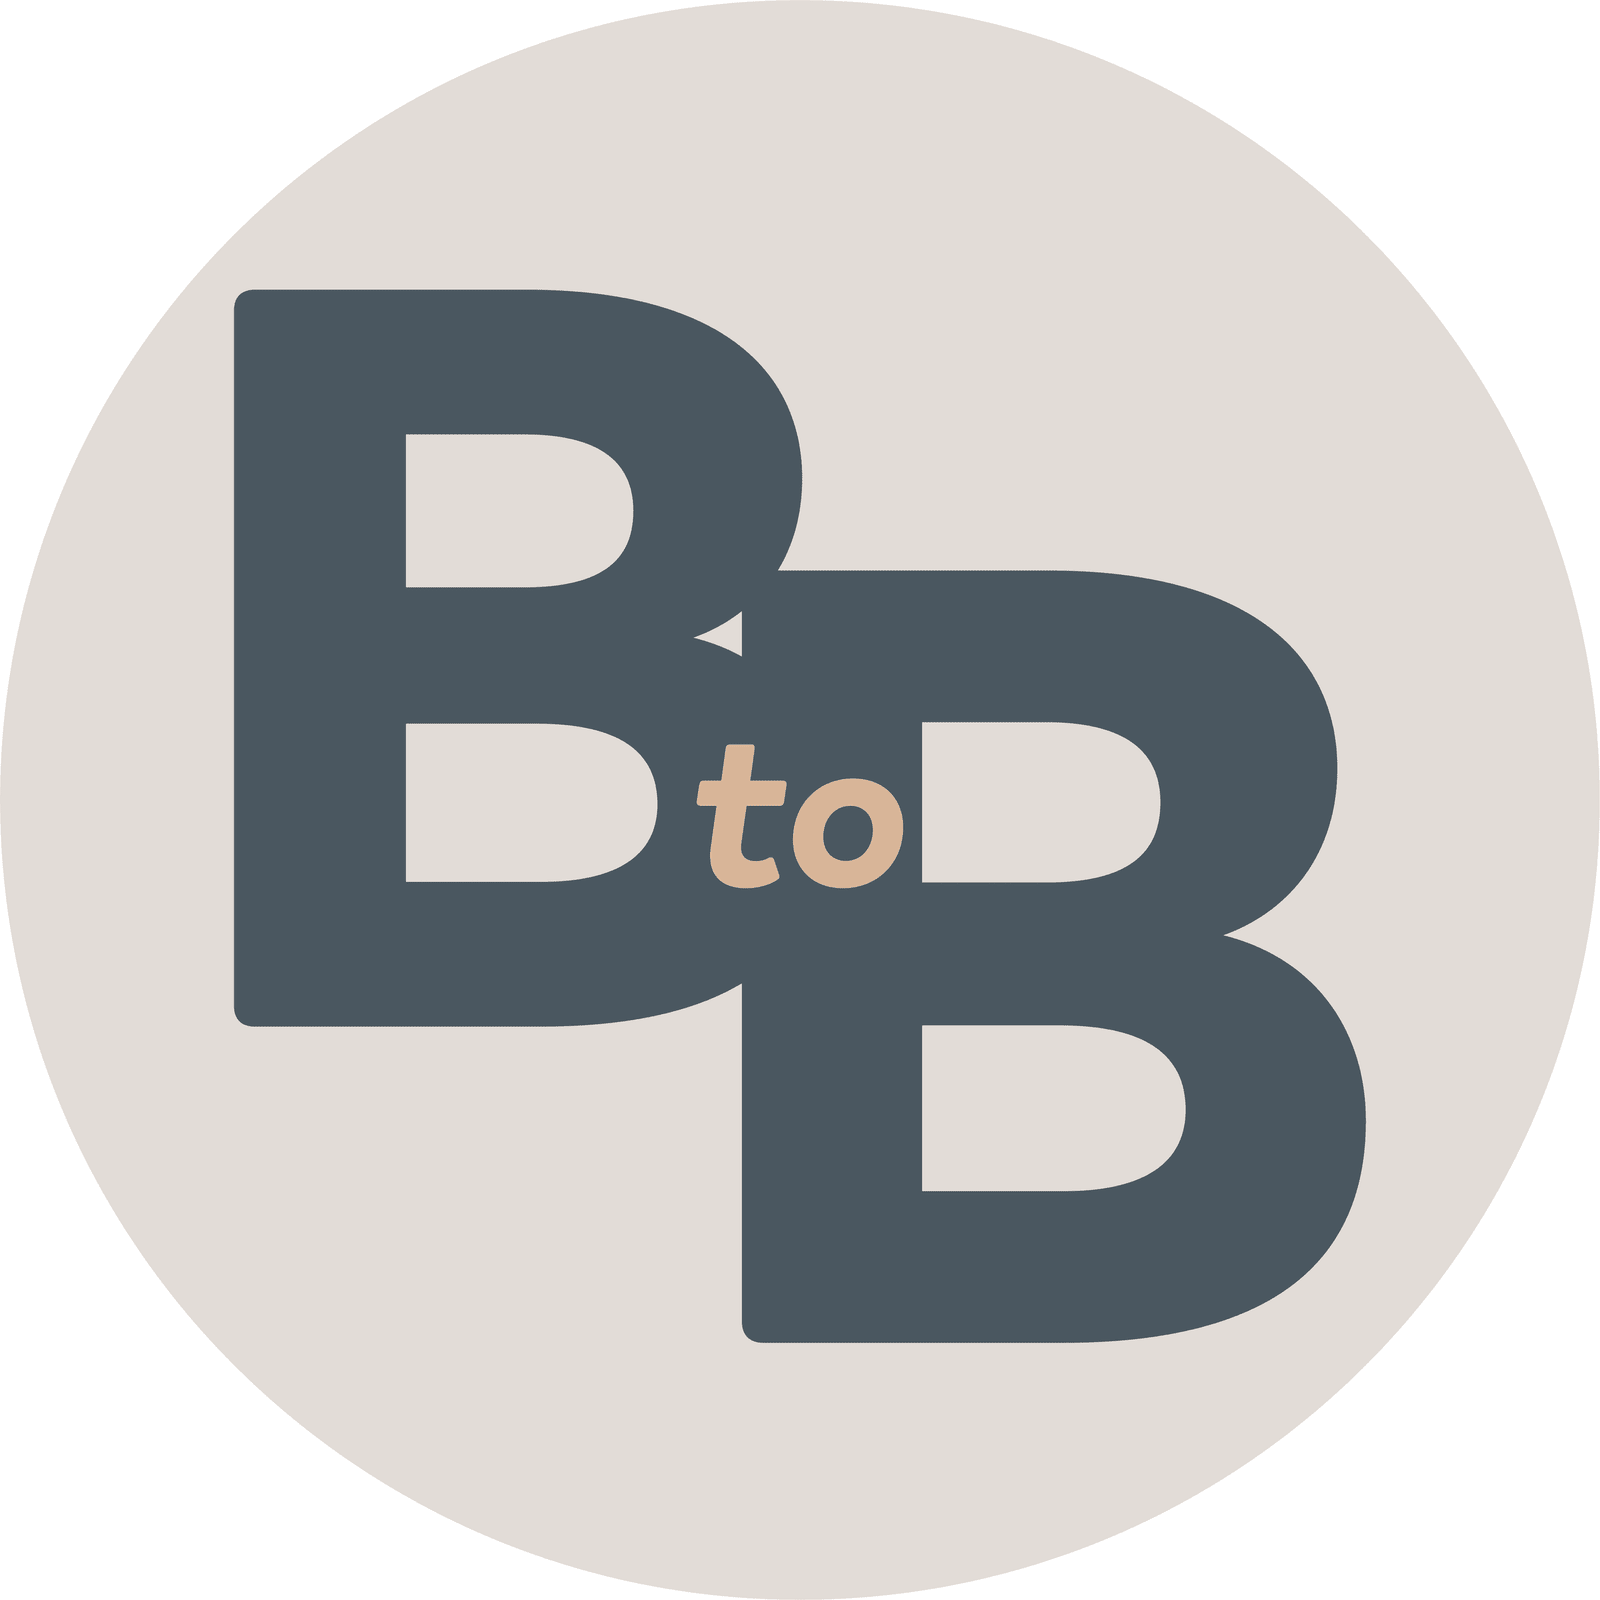 btob logo